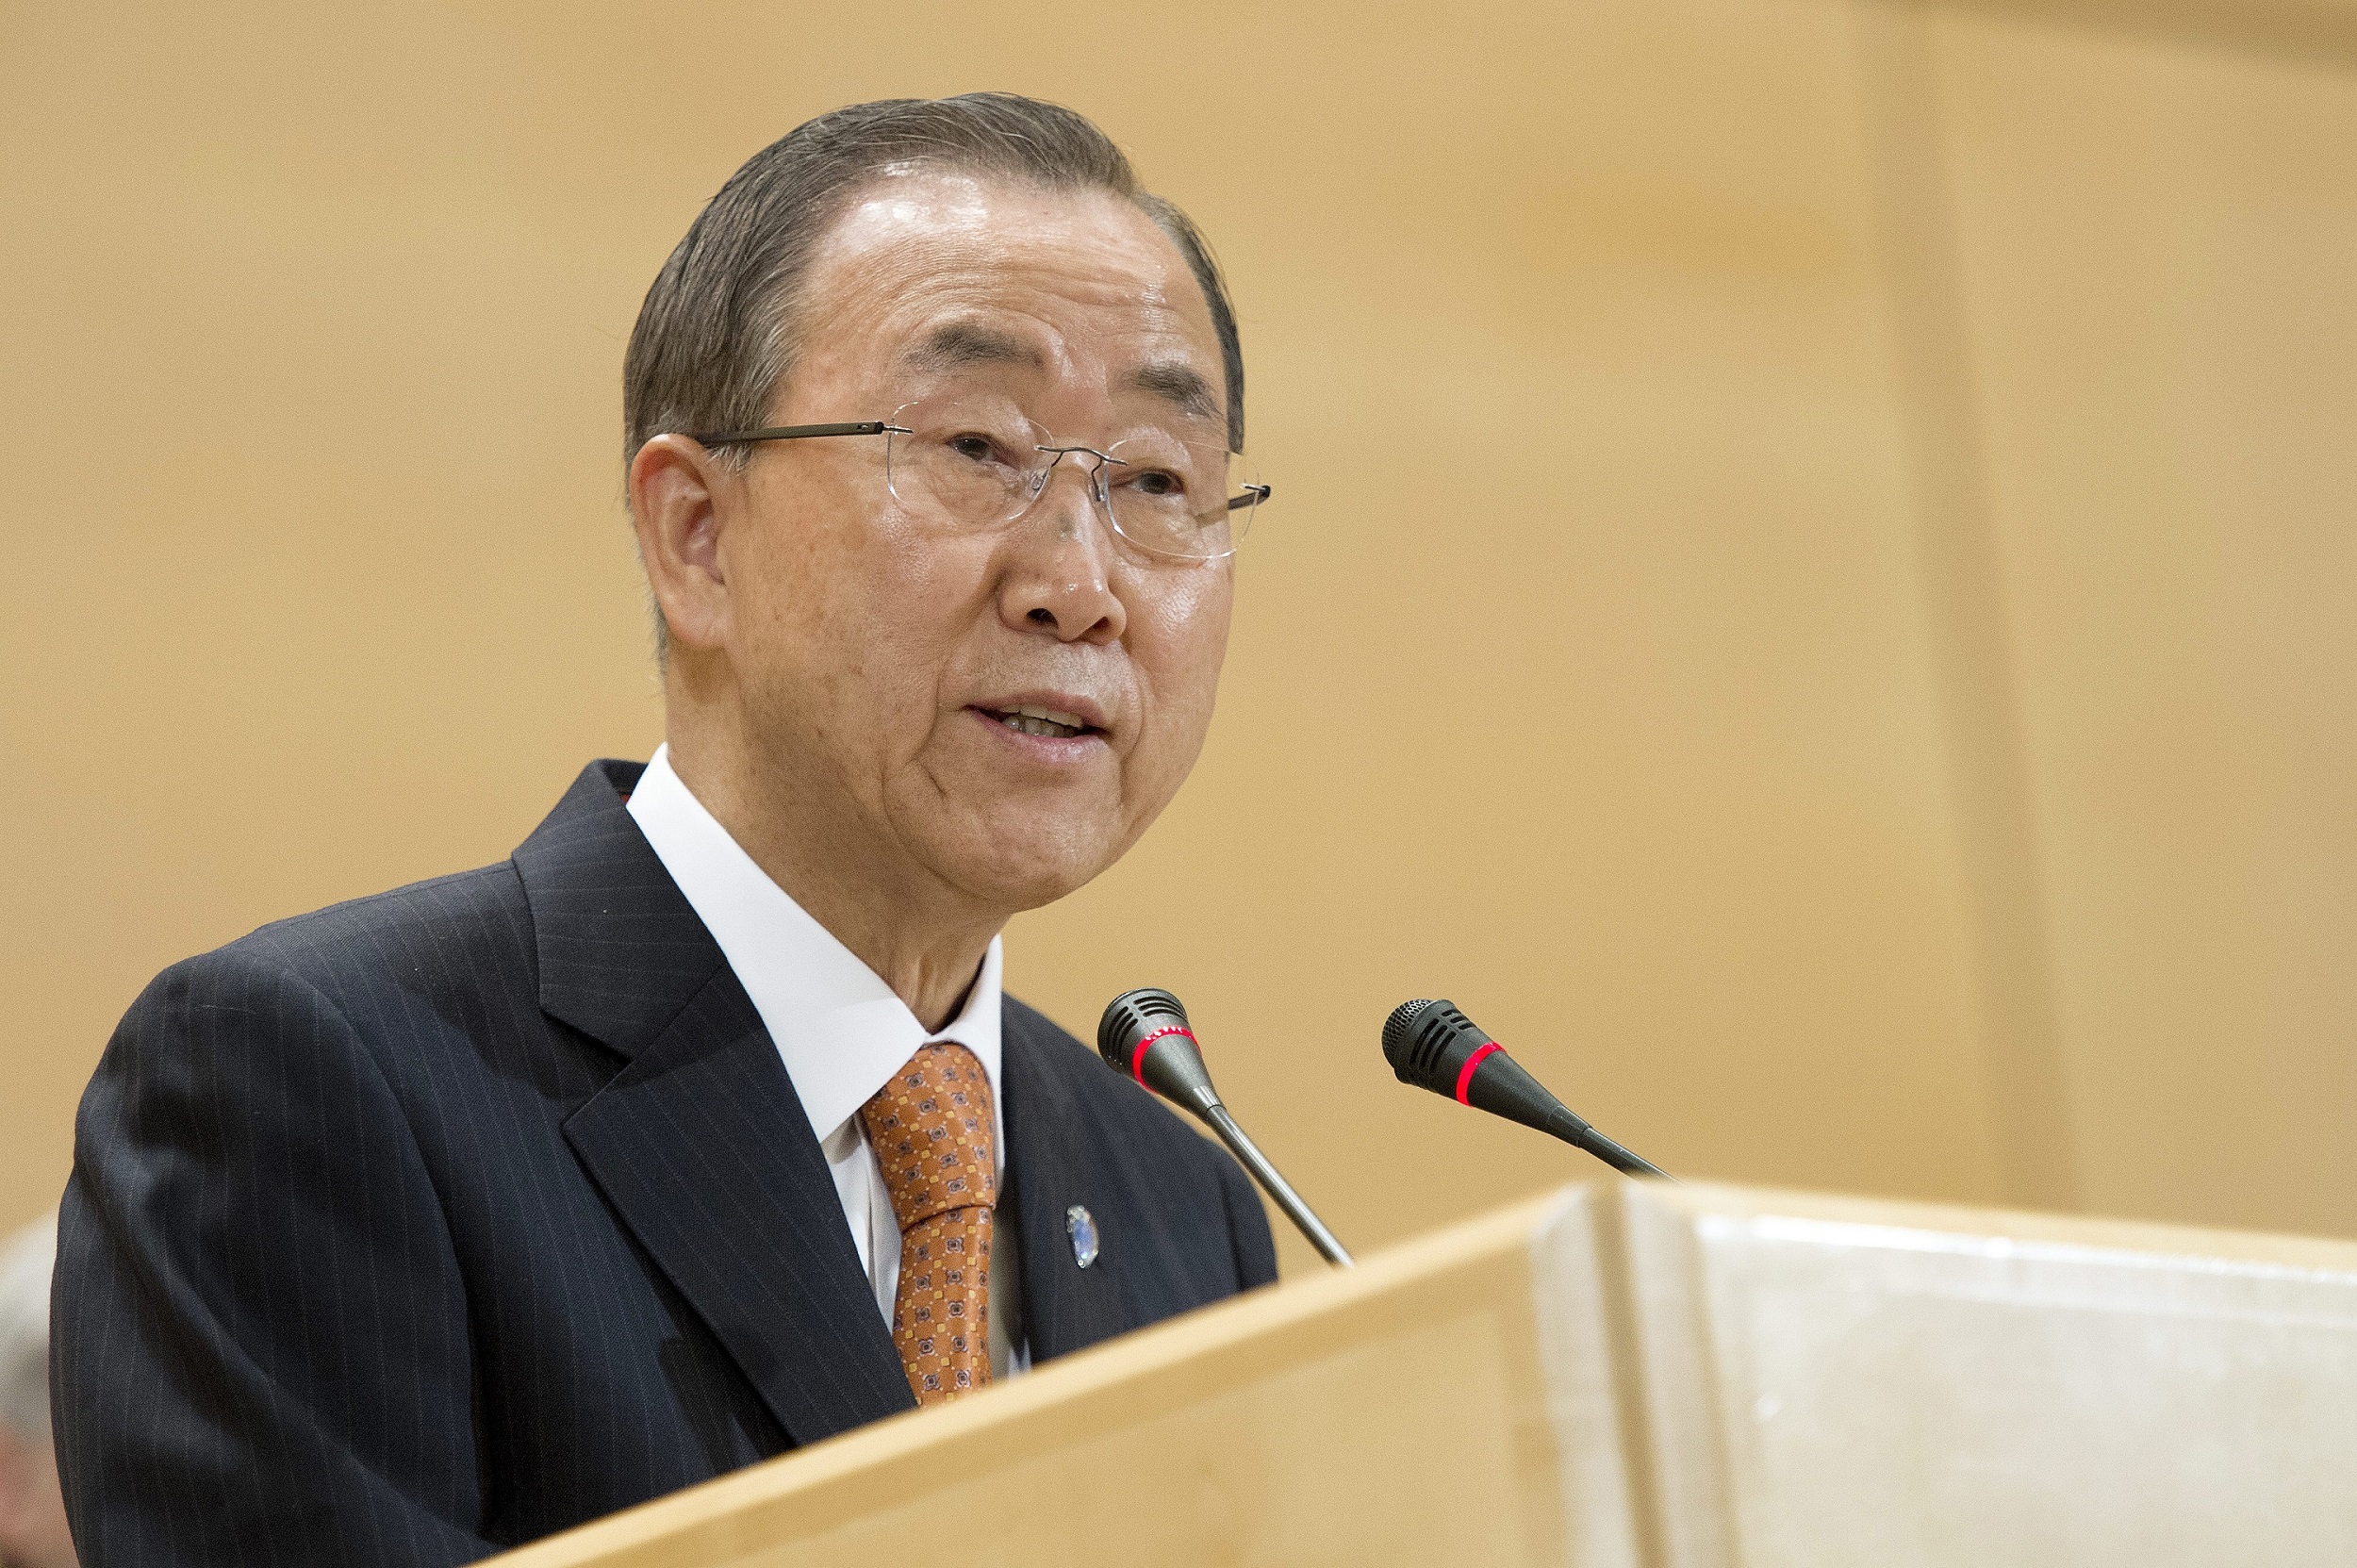 联合国秘书长回想他年轻时在韩战间奔走逃命，现敦促国际采取更多行动以解决流离失所的问题